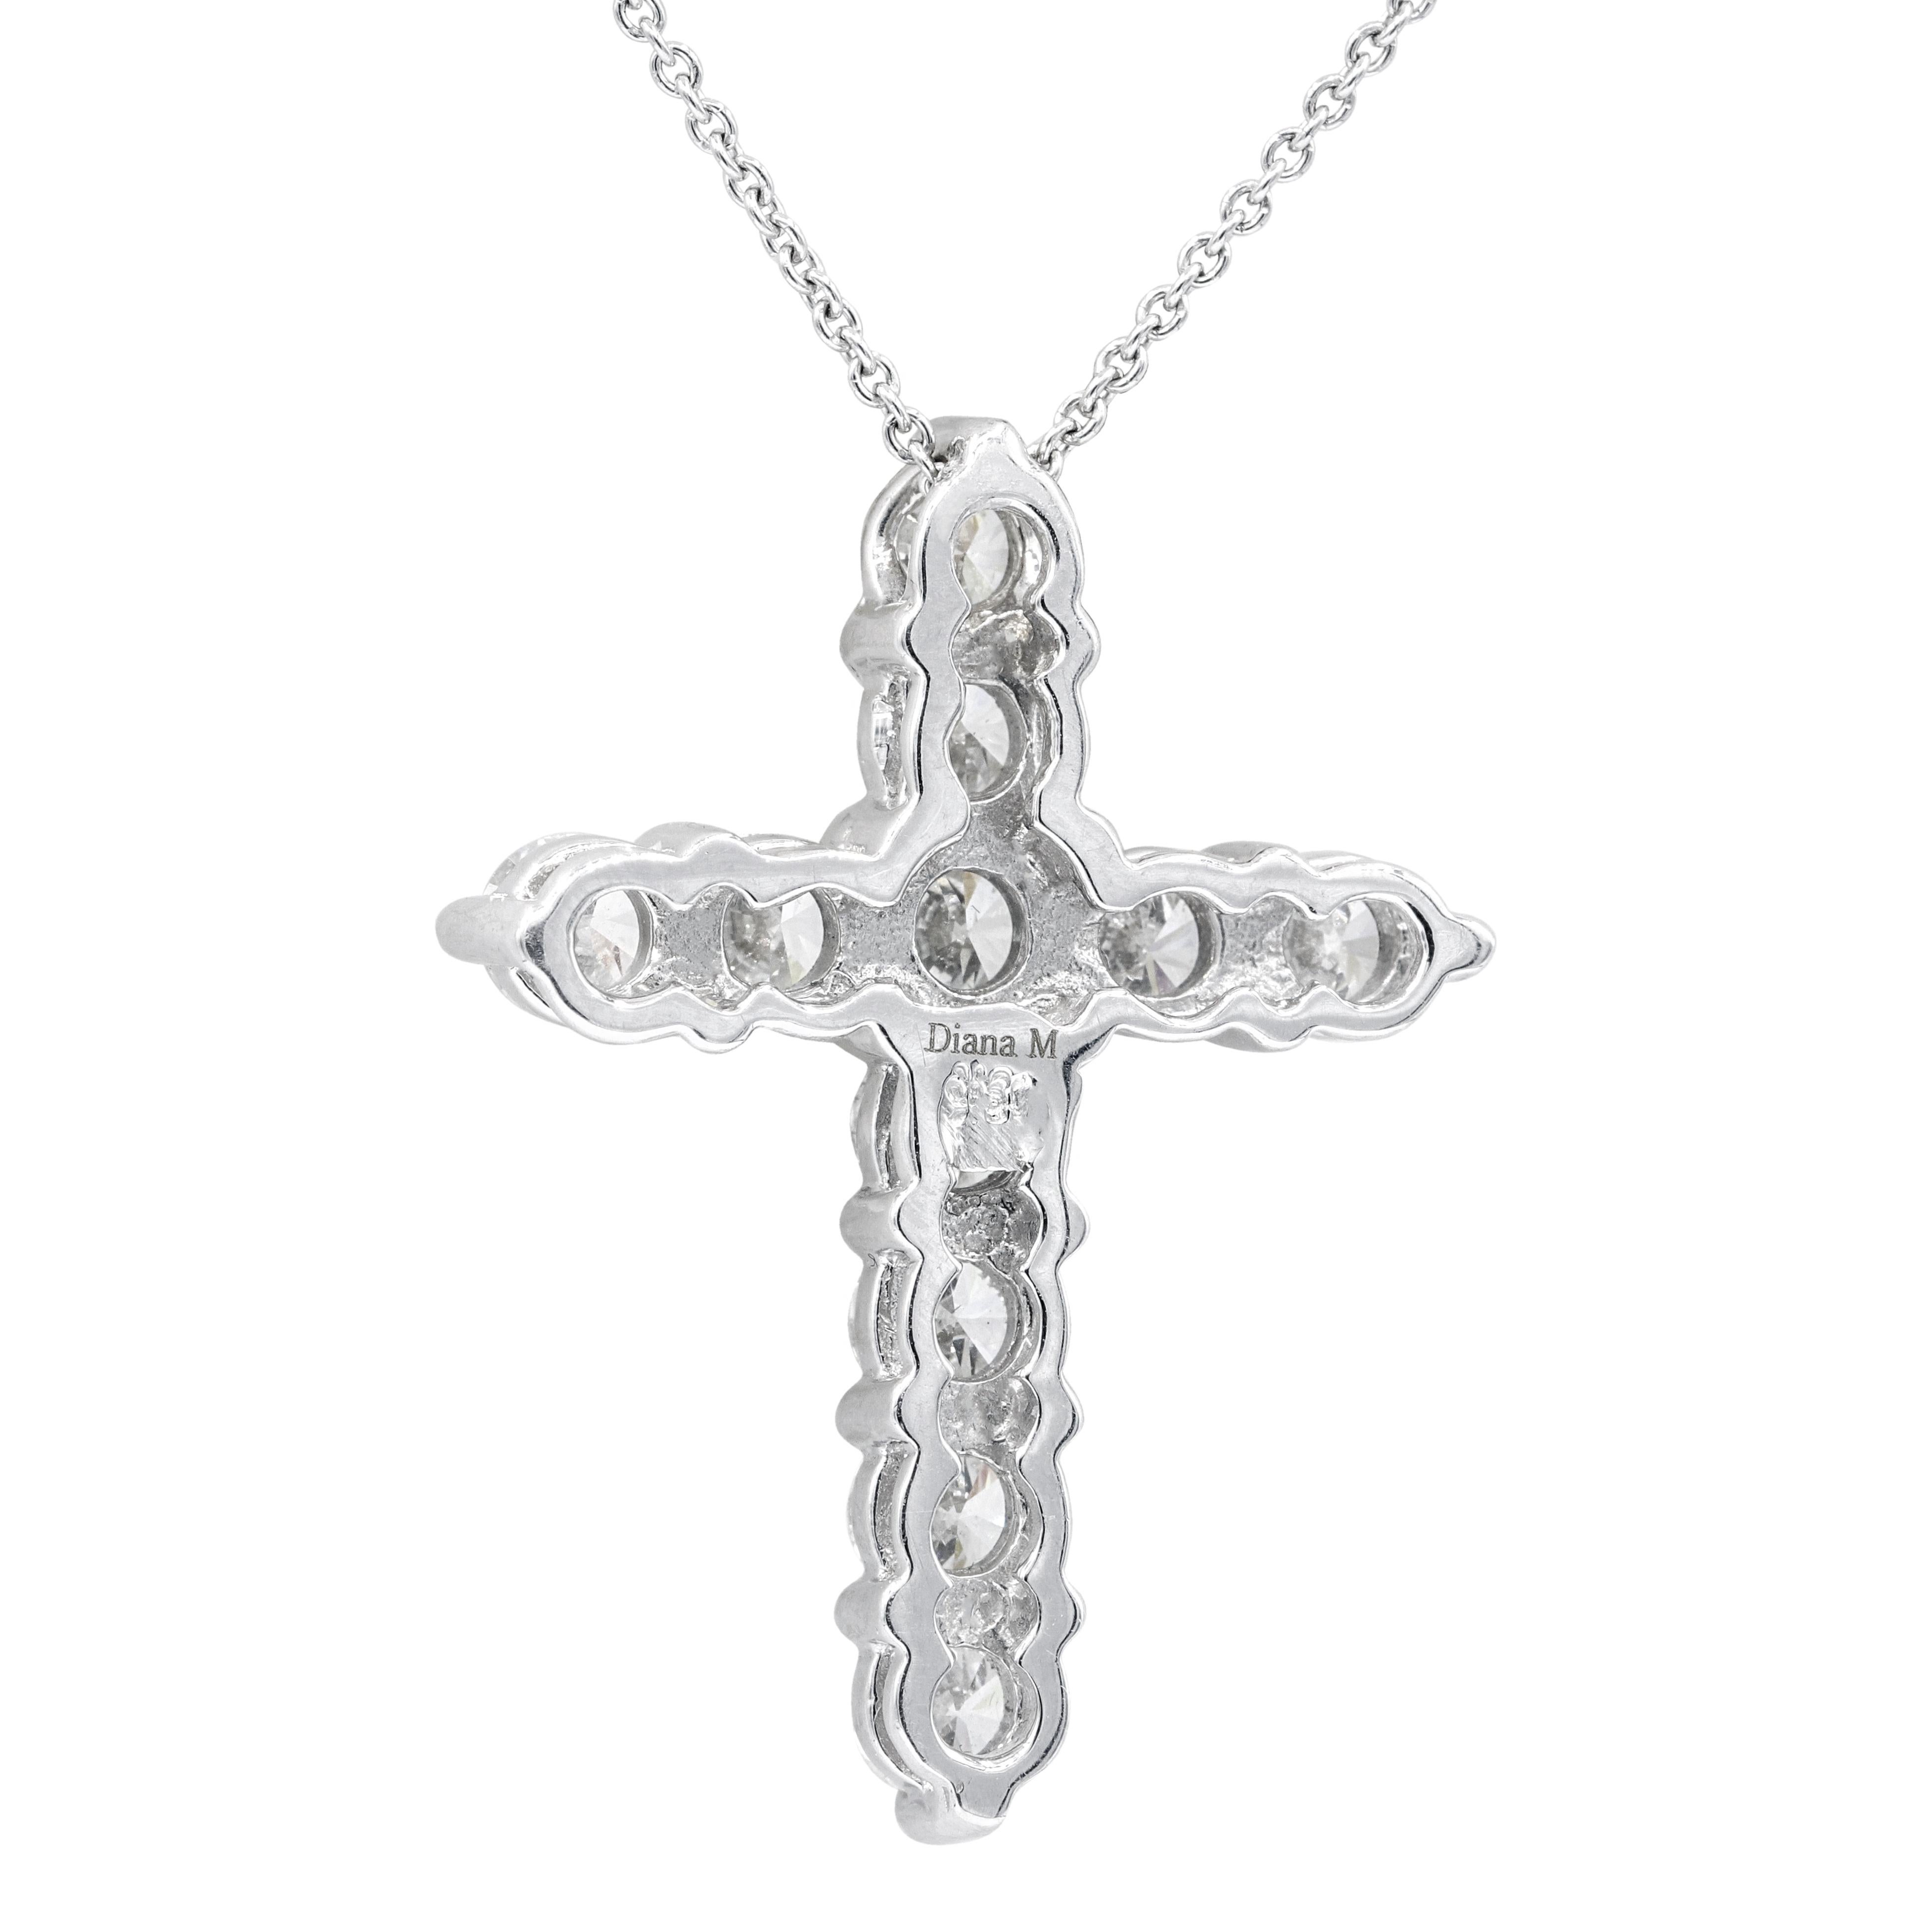 pendentif en forme de croix en or blanc 18KT avec la chaîne, doté de 3,10 ct de 11 diamants ronds
Taille : 1